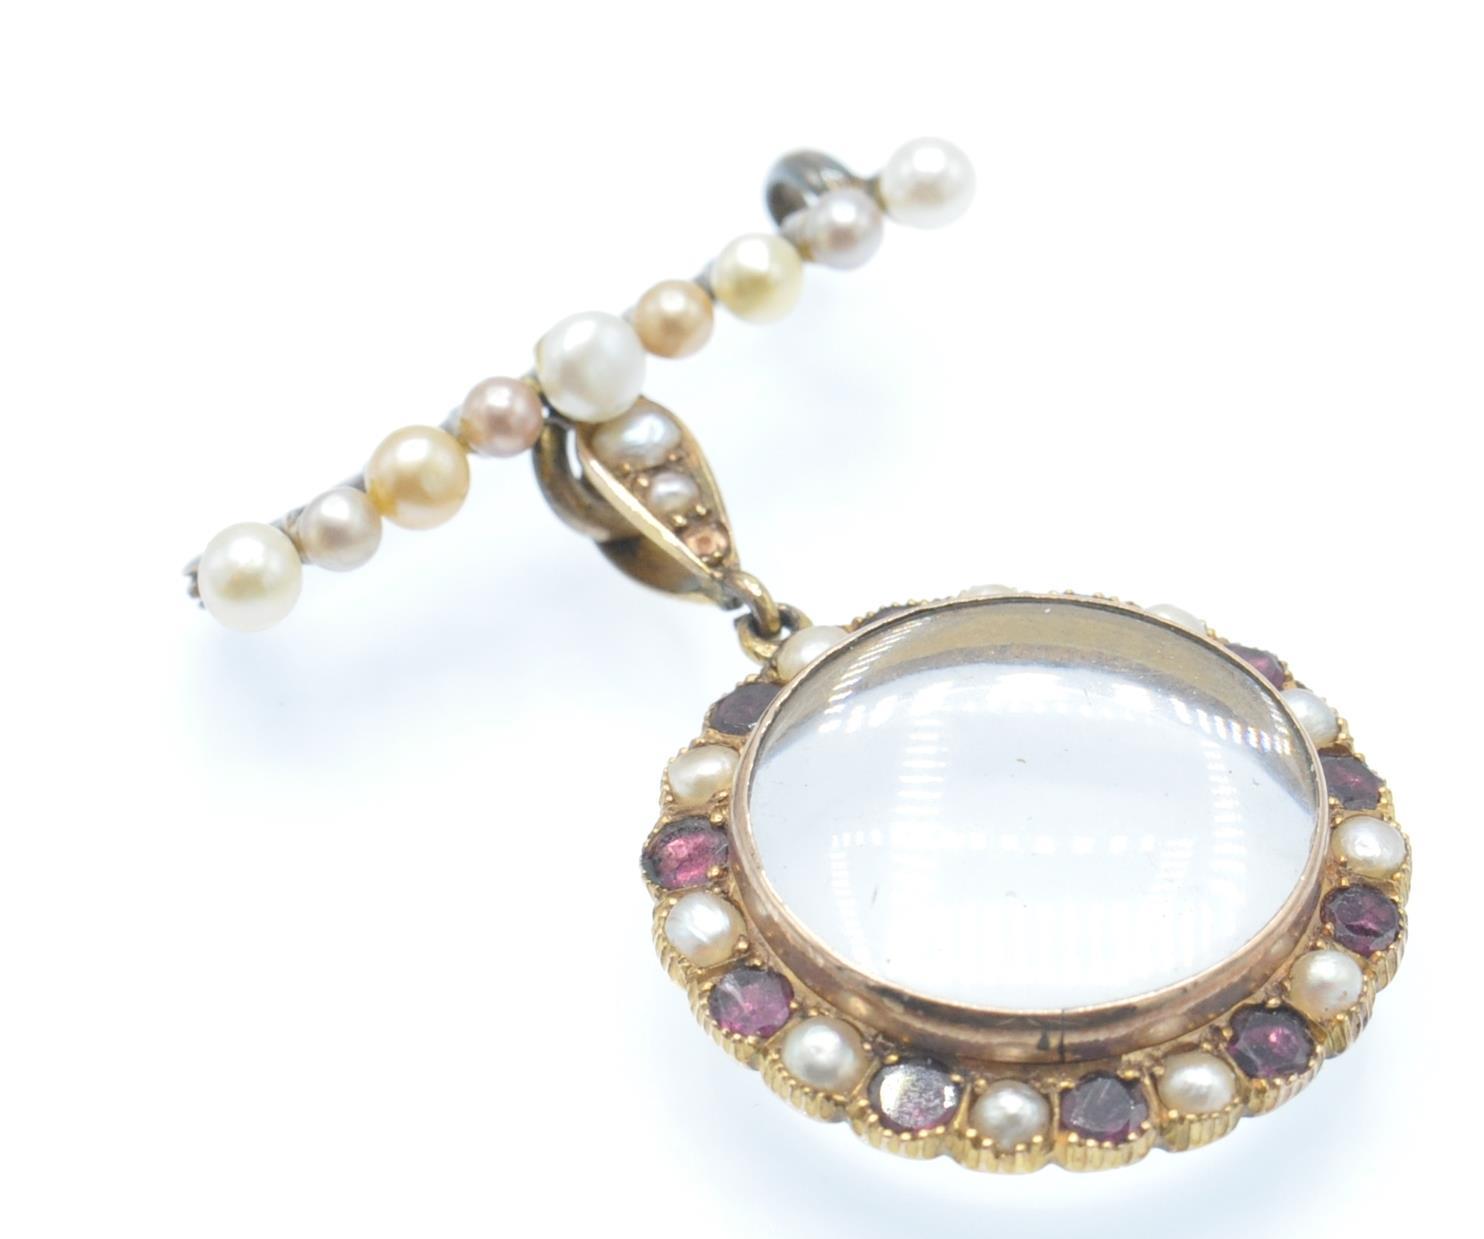 An Antique Pearl & Garnet Brooch Locket